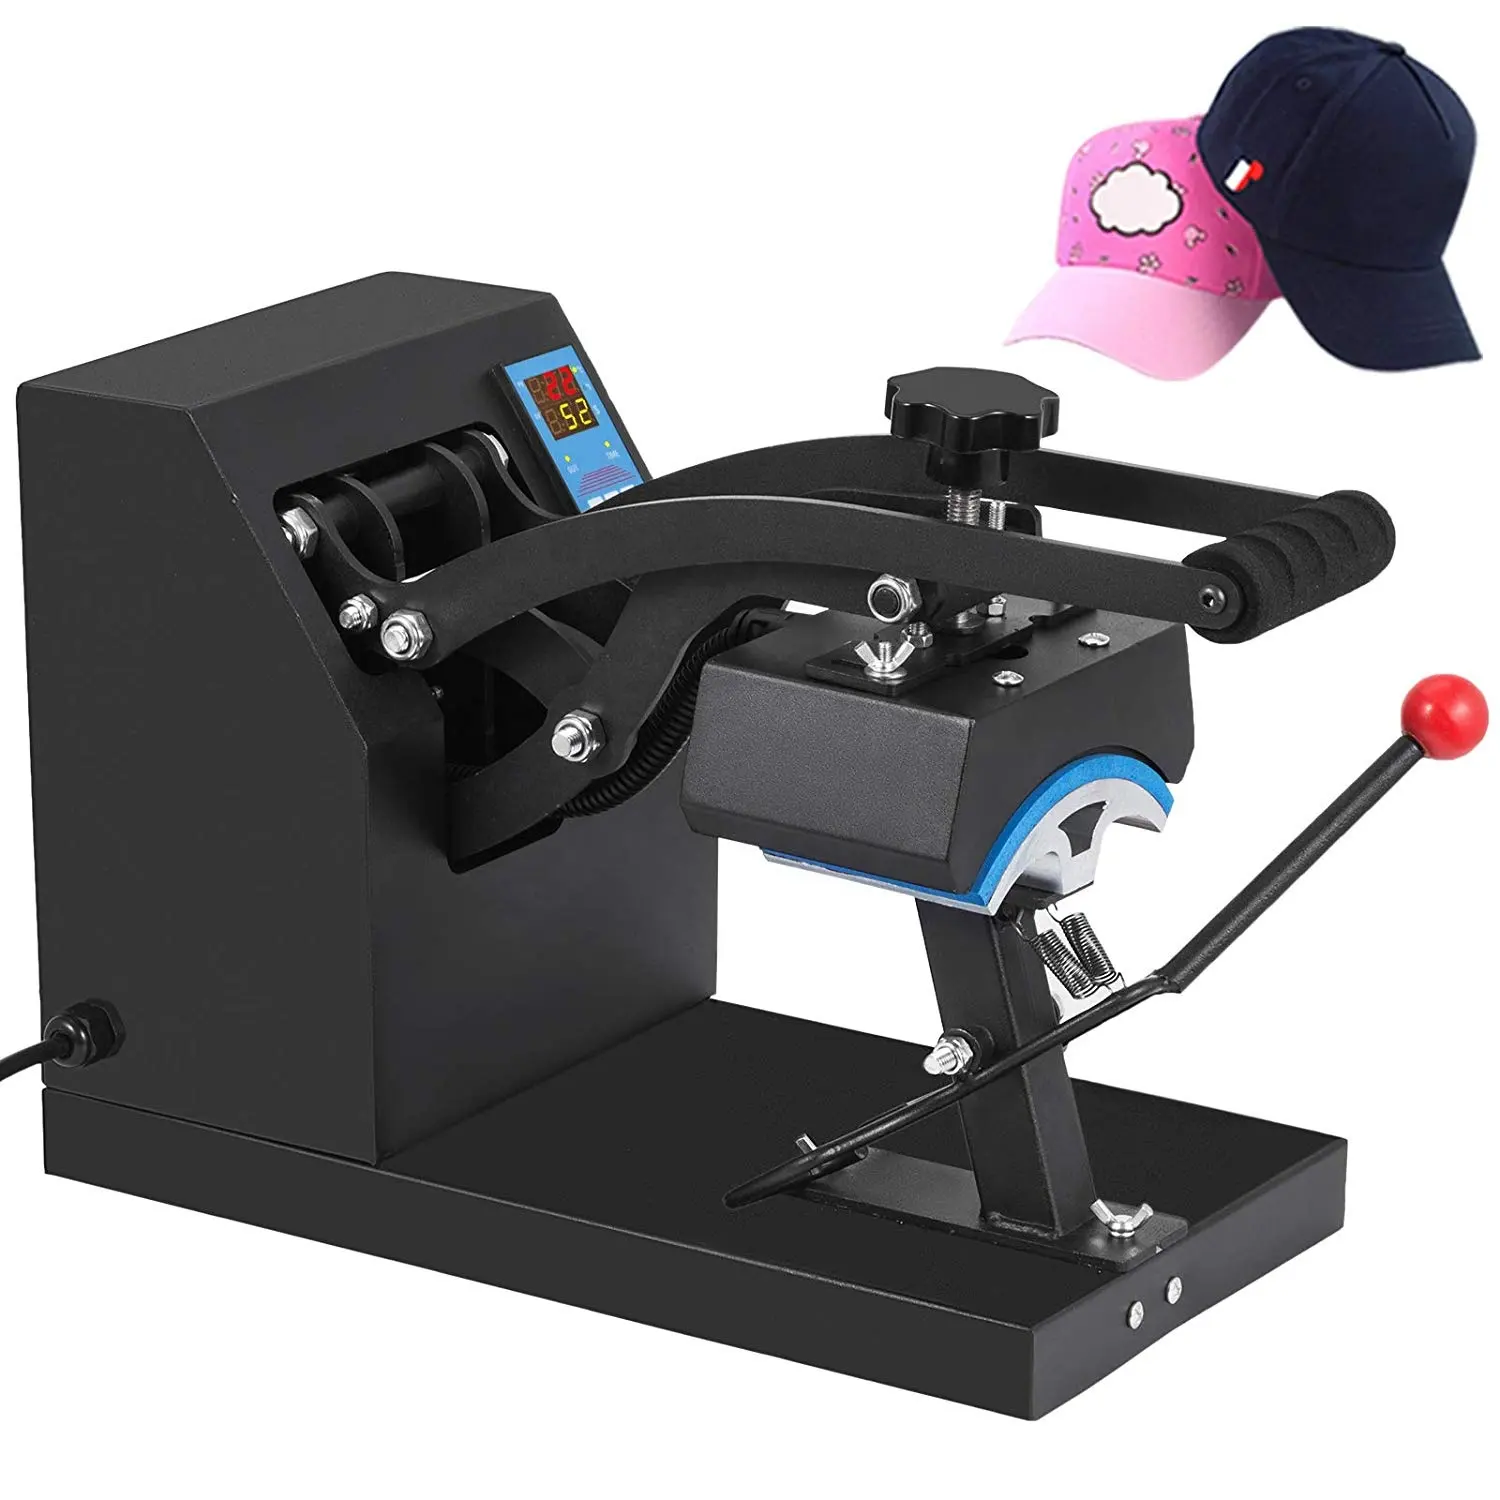 Machine de presse pour chapeau, pressoir à chaud, transfert professionnel, avec minuterie numérique LCD, autonomie de 12000 heures, contrôle de la température